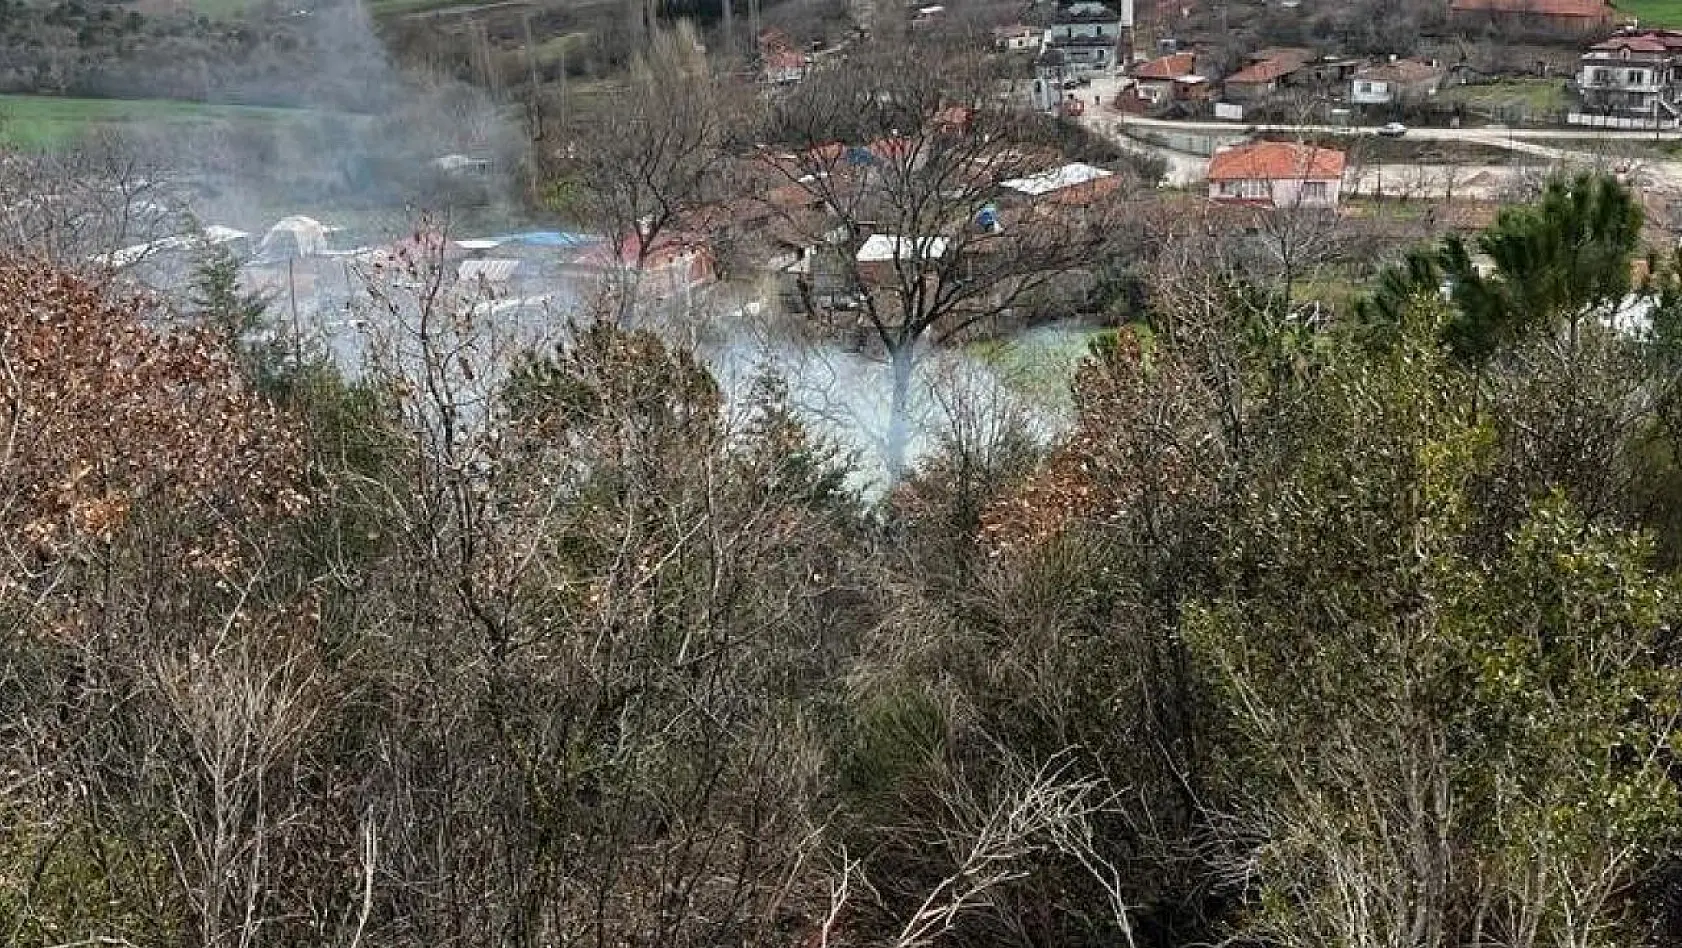 Gönen Yeniakçapınar köyünde orman yangını meydana geldi